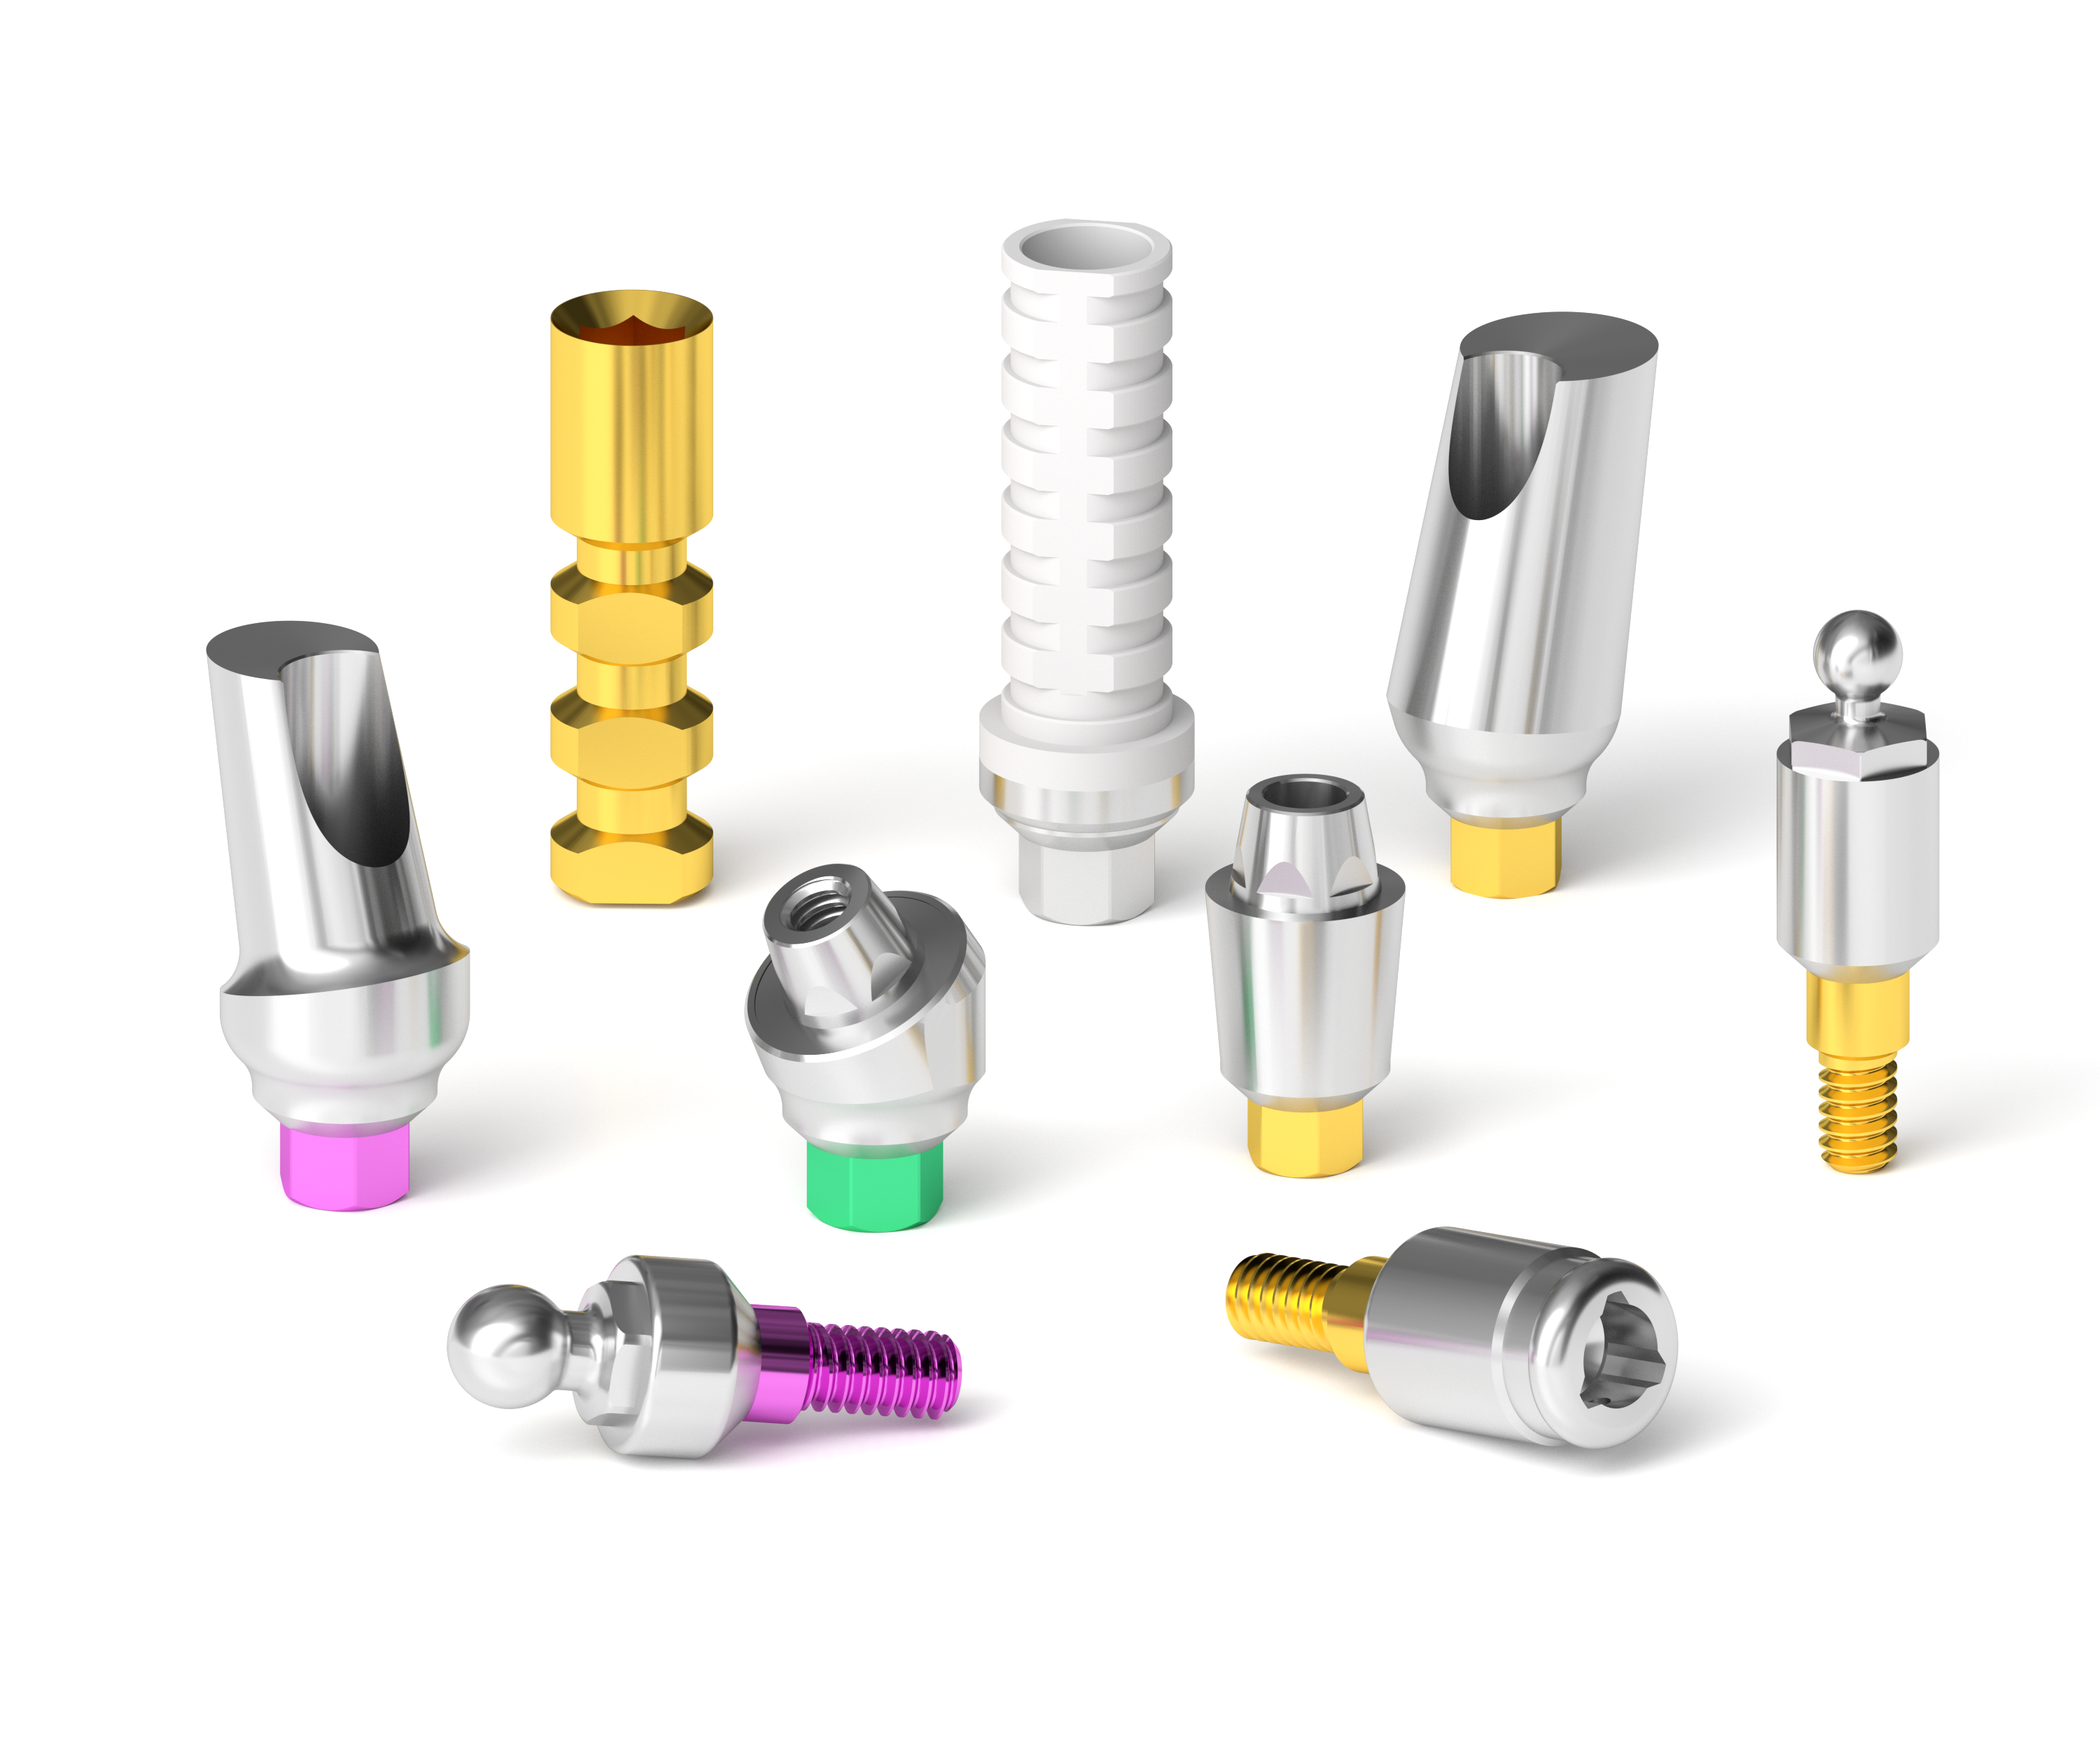 BIONIKA BioLevel Implantációs Rendszer, implantátumok és felépítmények széles választékával.